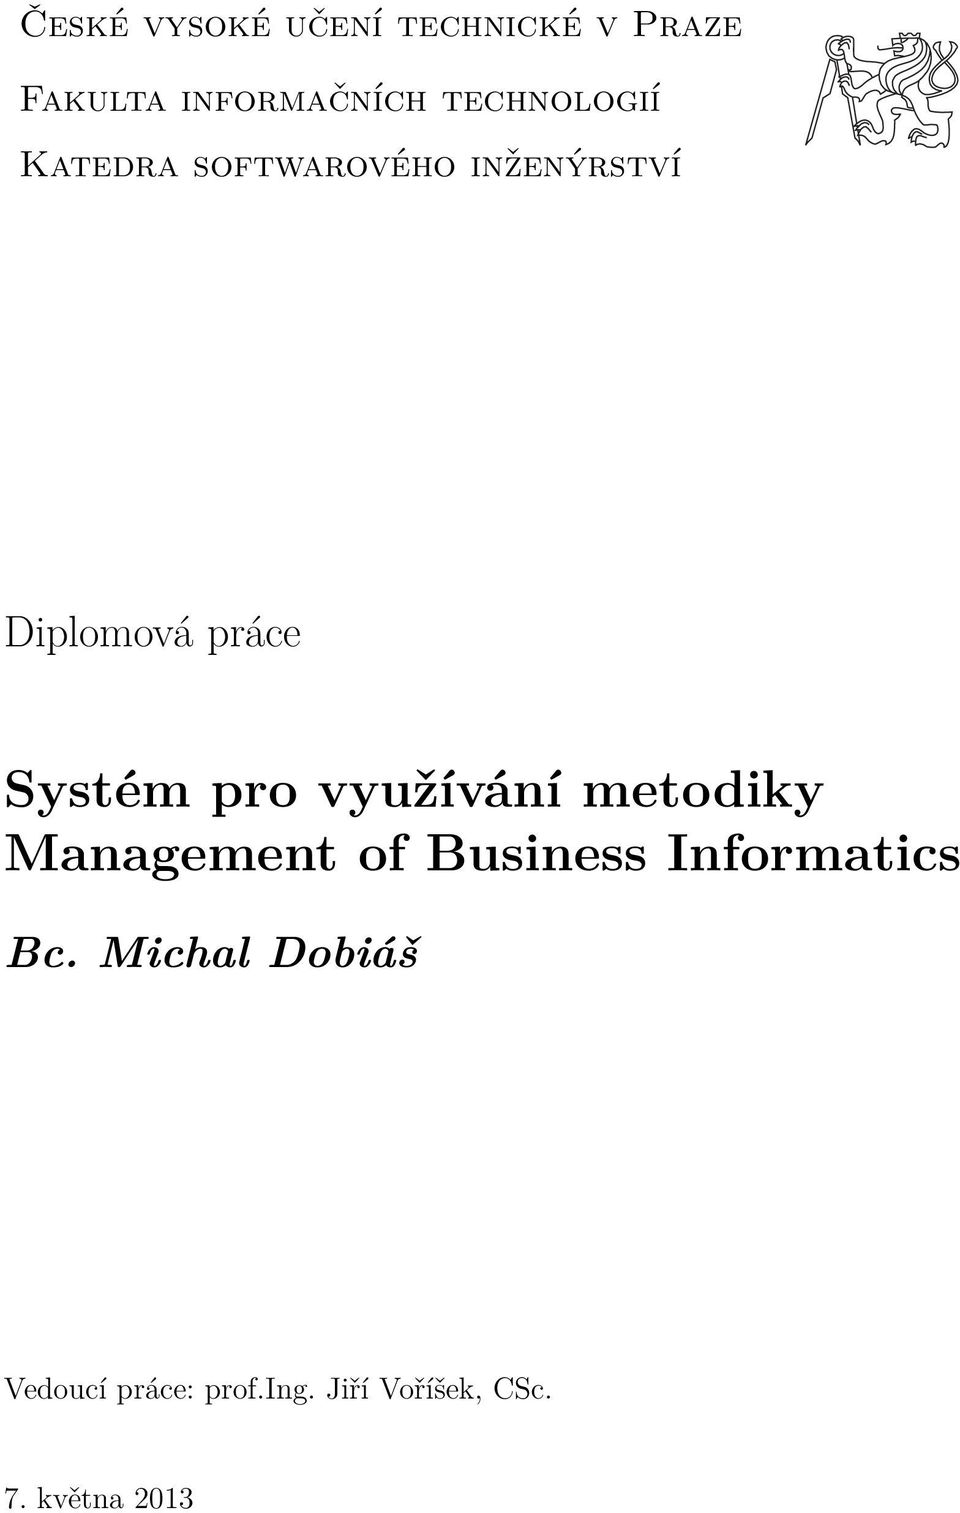 Systém pro využívání metodiky Management of Business Informatics